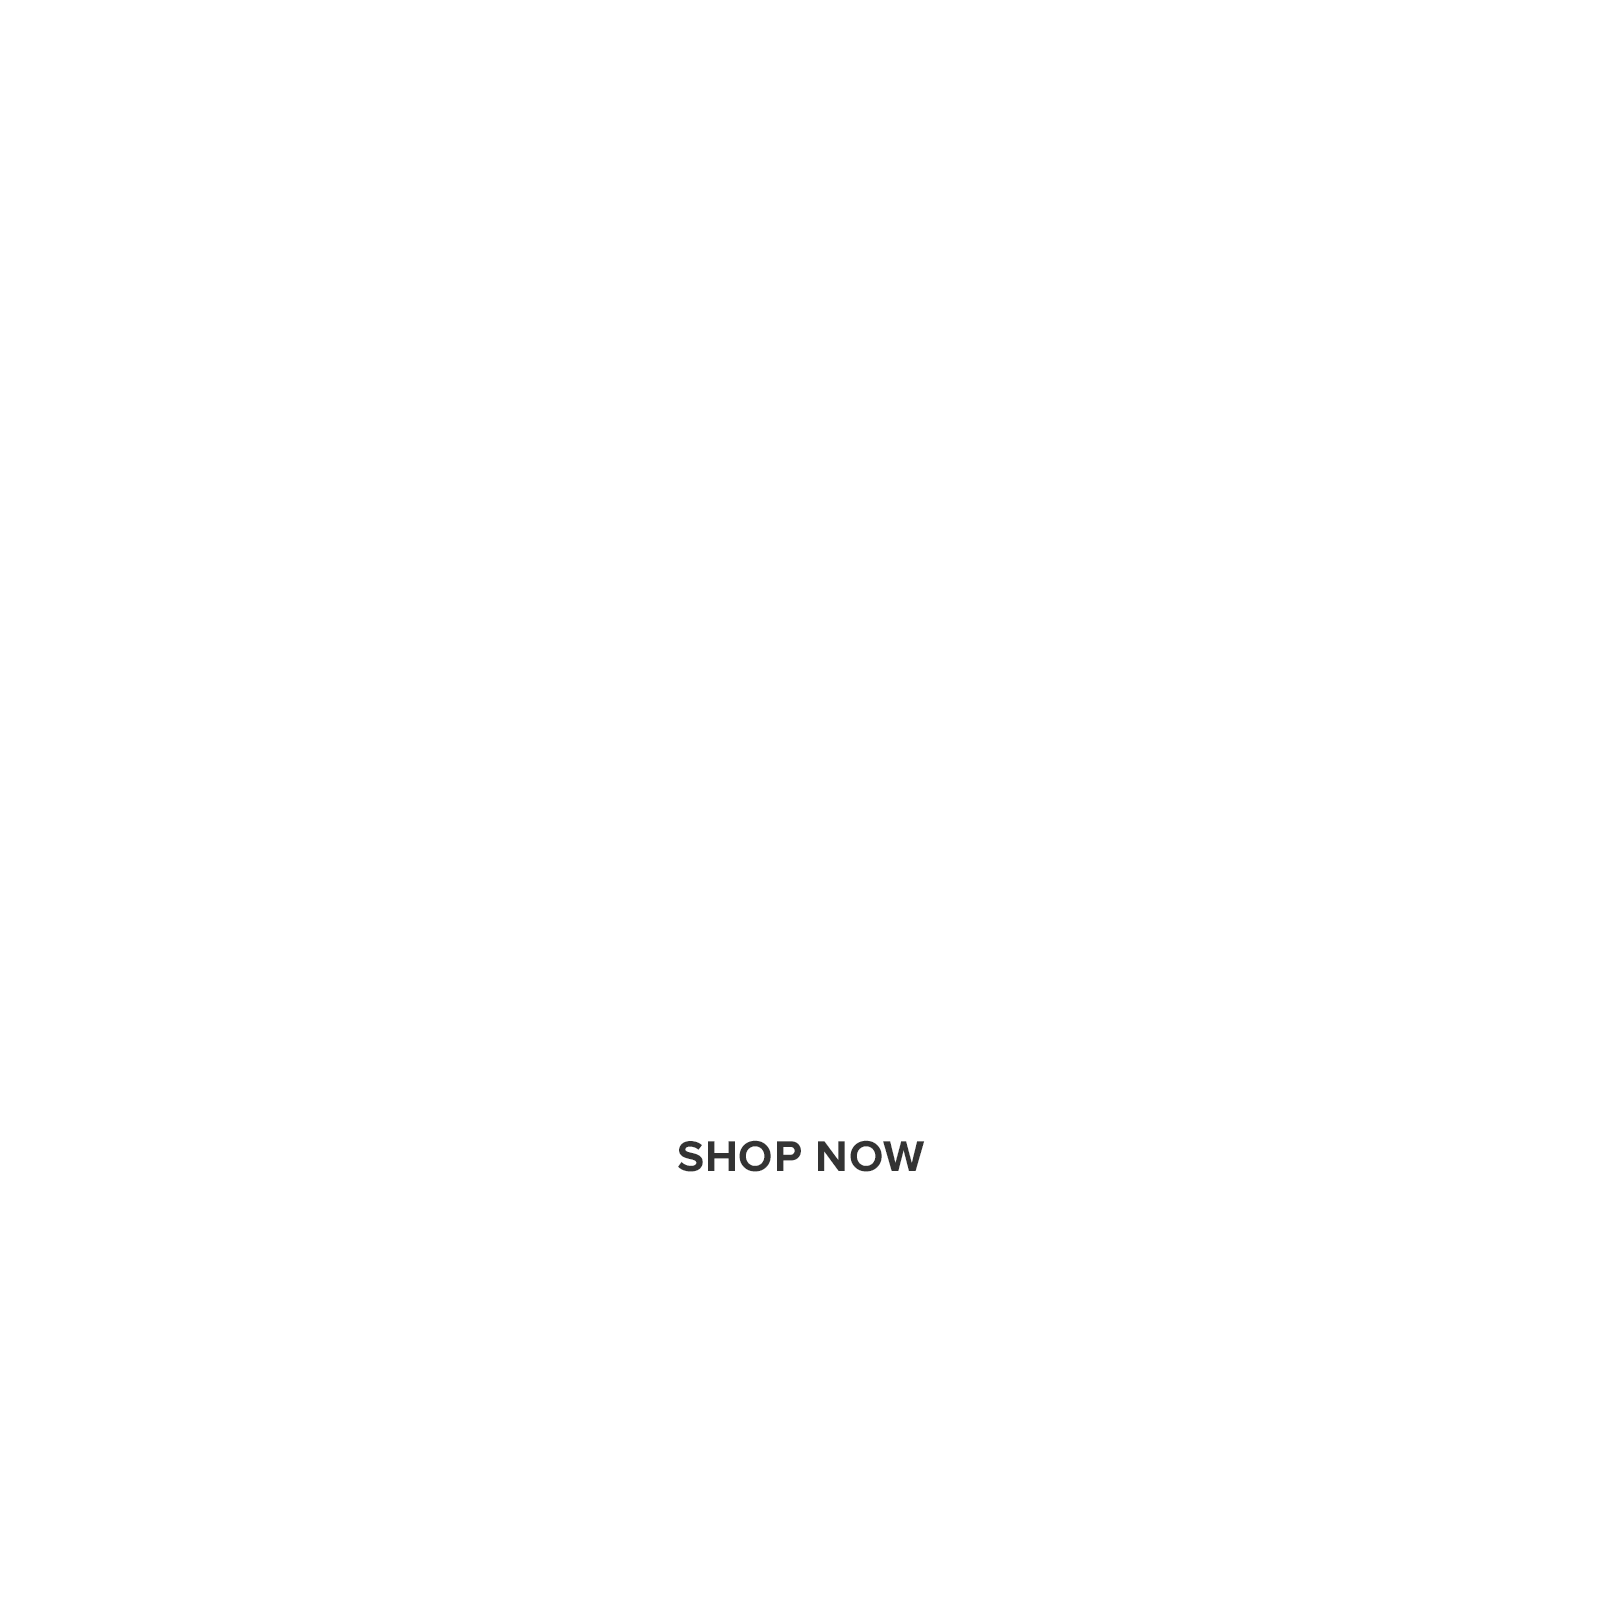 20% off meditation with code dotdzen